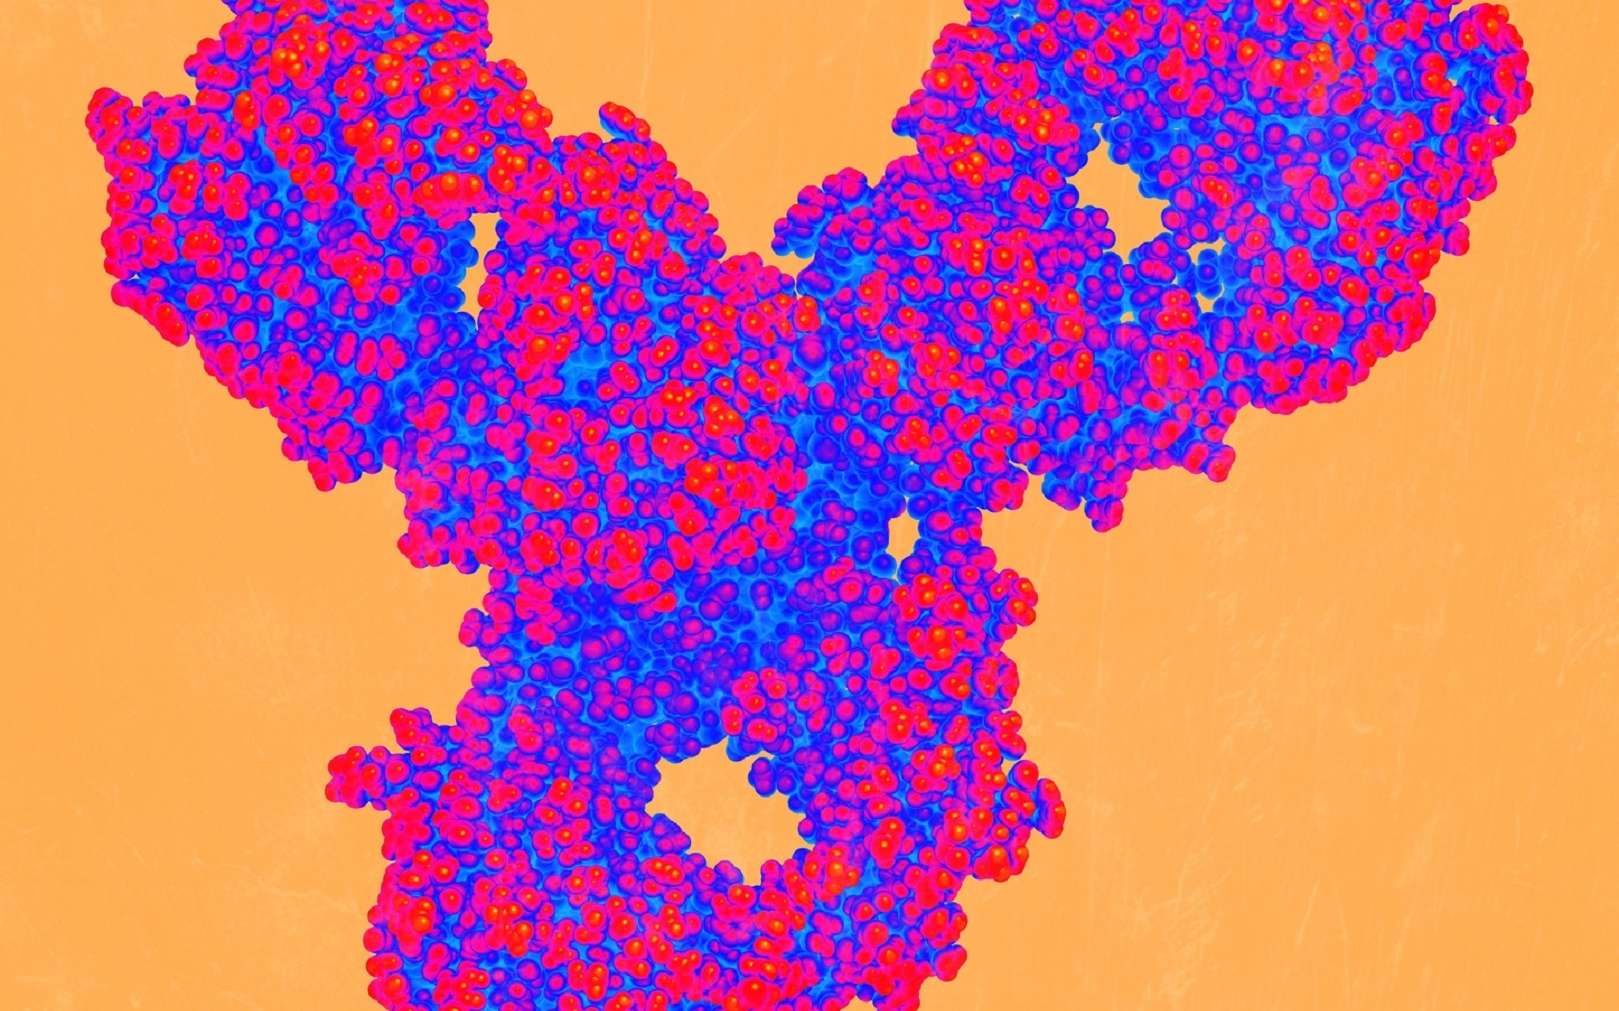 Vue d’artiste d’une surface fonctionnalisée munie d’anticorps anticancéreux (en forme de Y). L'immunothérapie, testée depuis 1893, représente certainement l'une des pistes d'avenir pour le traitement des cancers. © PNNL, Flickr, CC by-nc-sa 2.0